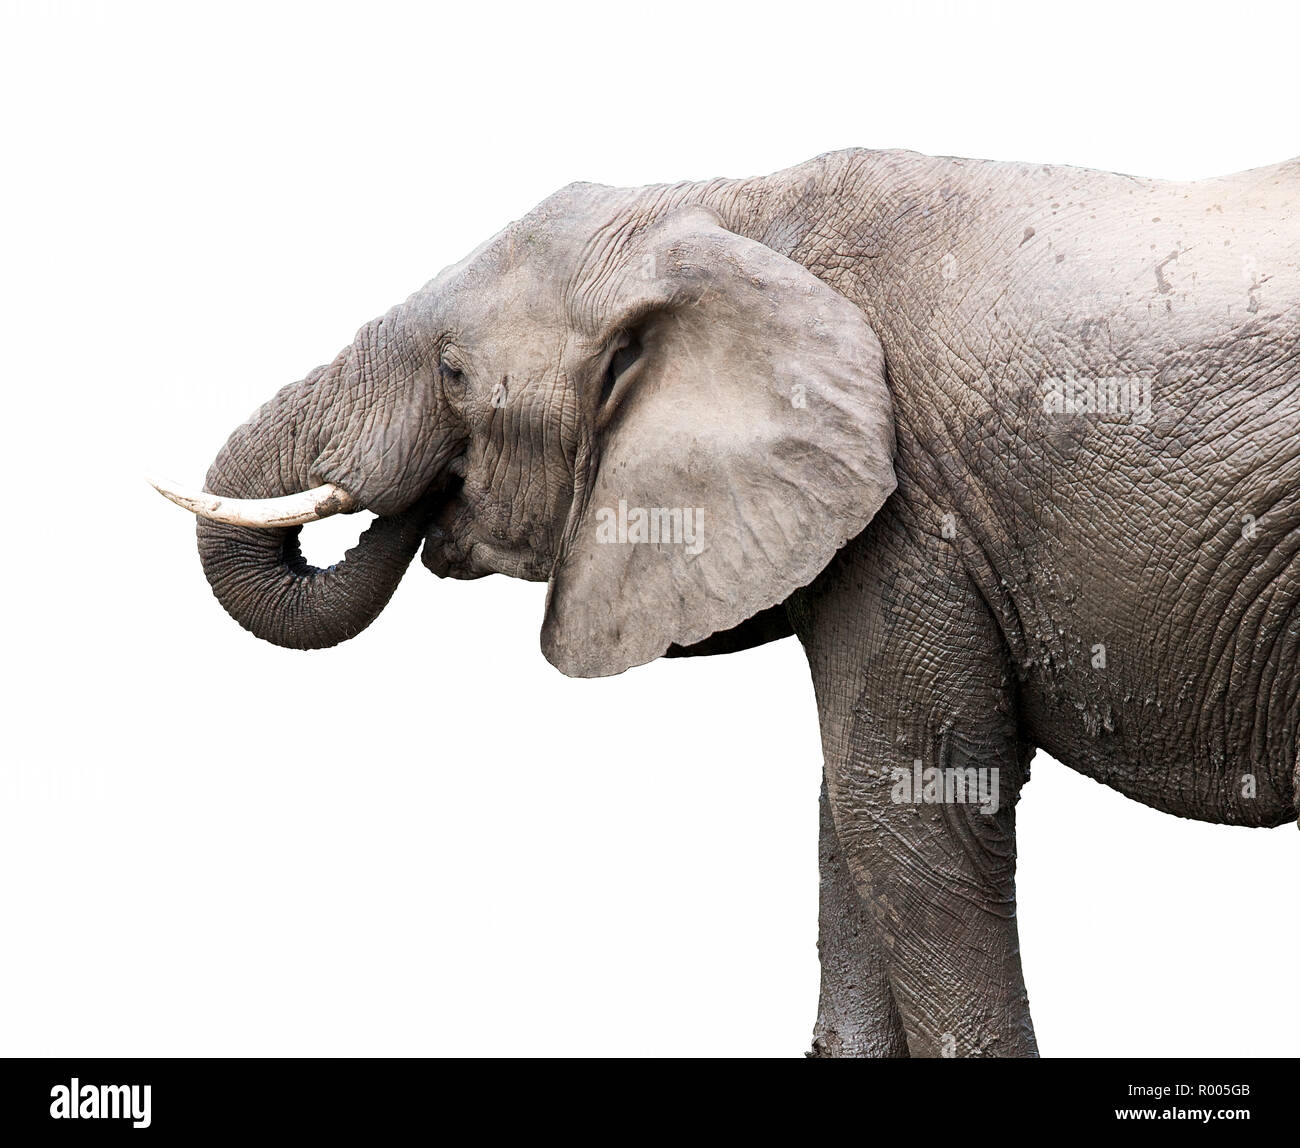 Elephant on white background Stock Photo